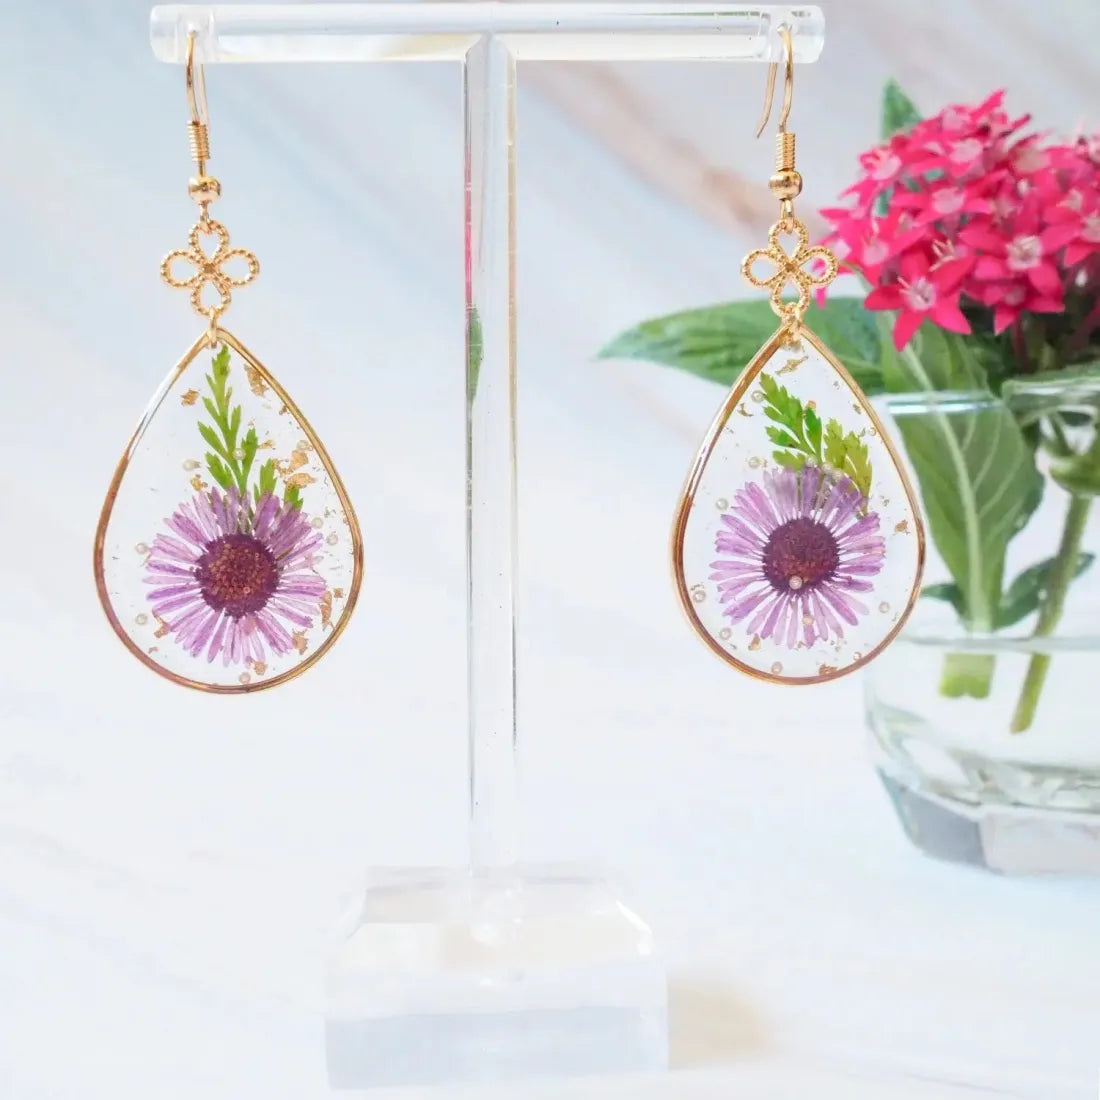 Garden Glimpse Glass Earrings - Made In Hawaii